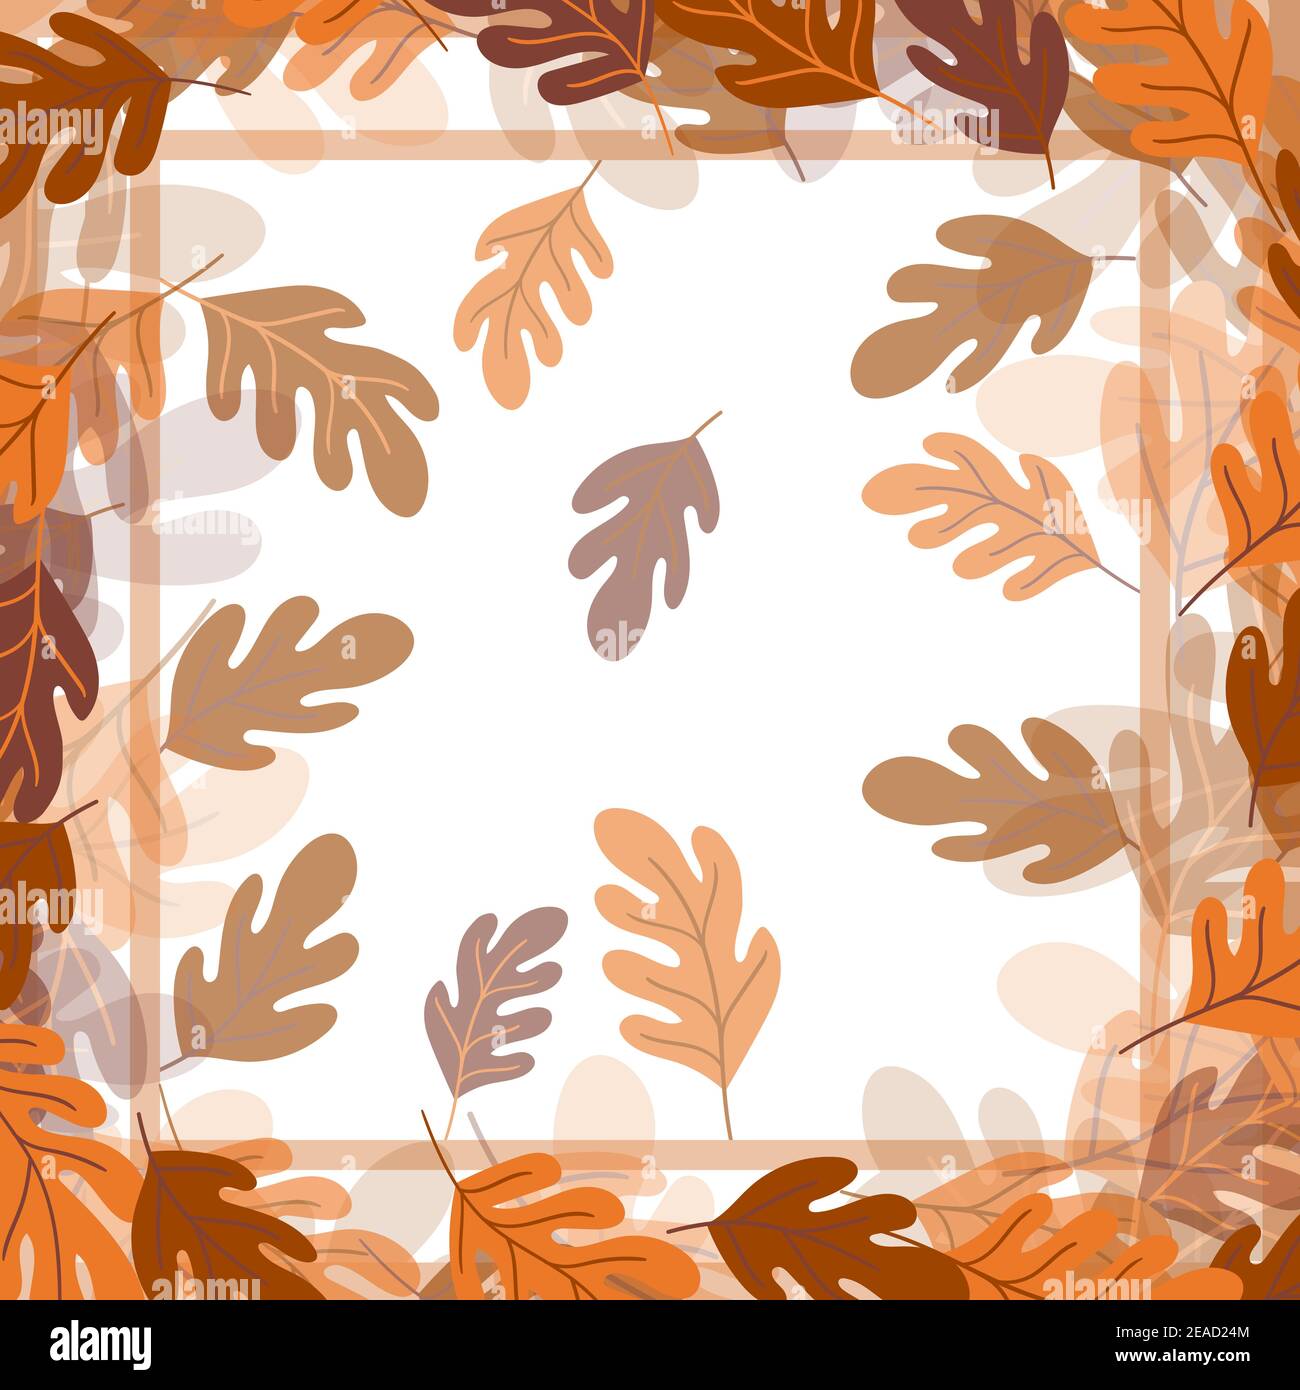 Druck für Taschentuch, Bandana, Schal, Taschentuch, Schal, Halstuch.  Quadratische Muster mit Ornament für Stoff, Textil, Seide Produkte.  Paisley-Vektor Stock-Vektorgrafik - Alamy